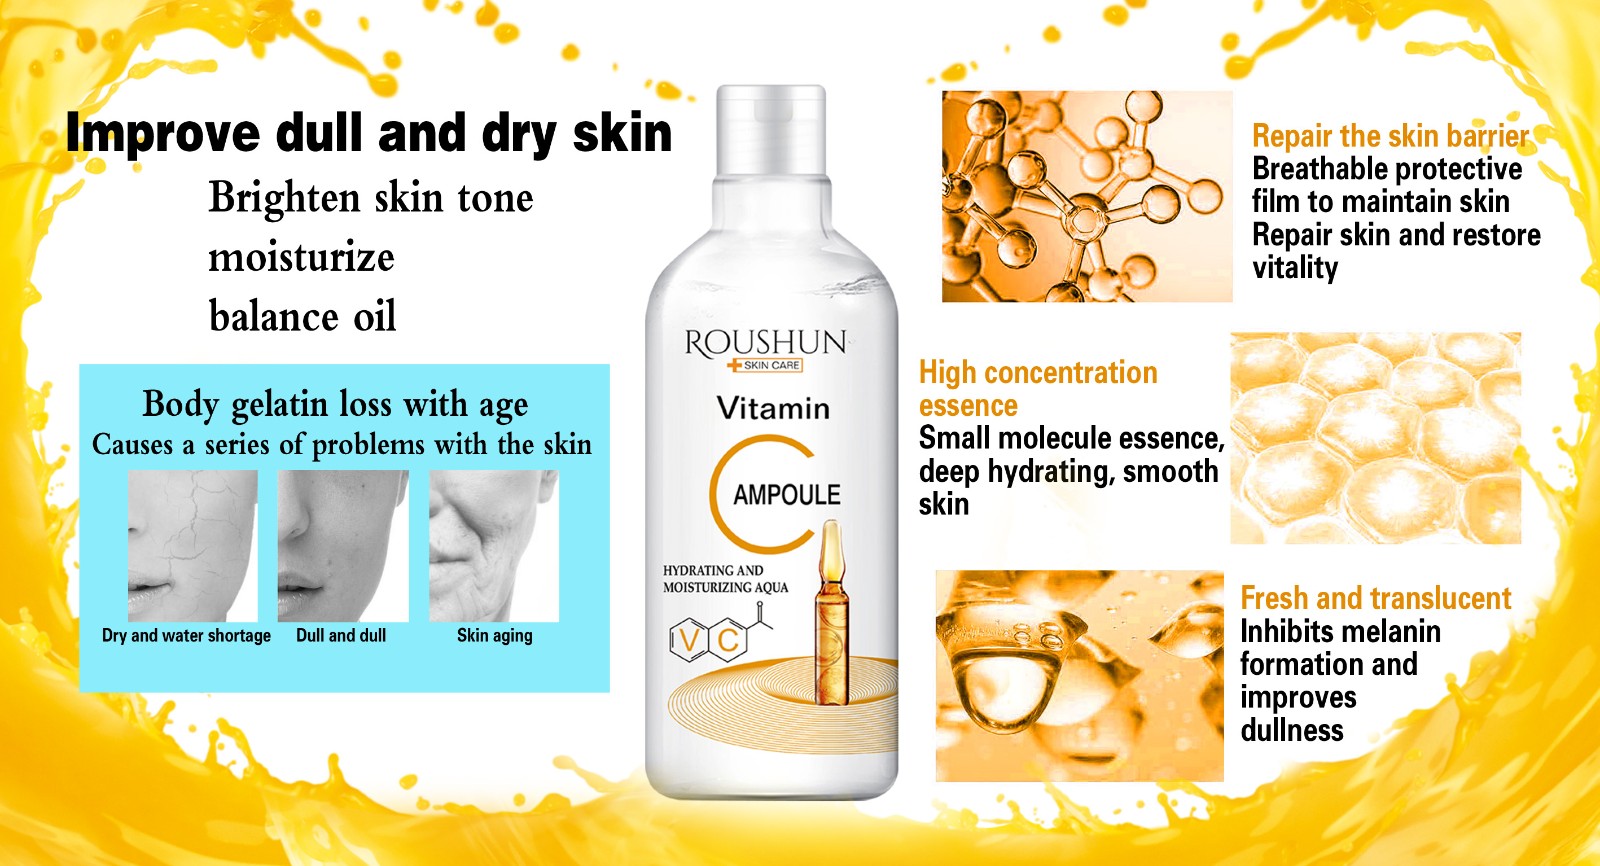 Roushun VC moisturizing aqua